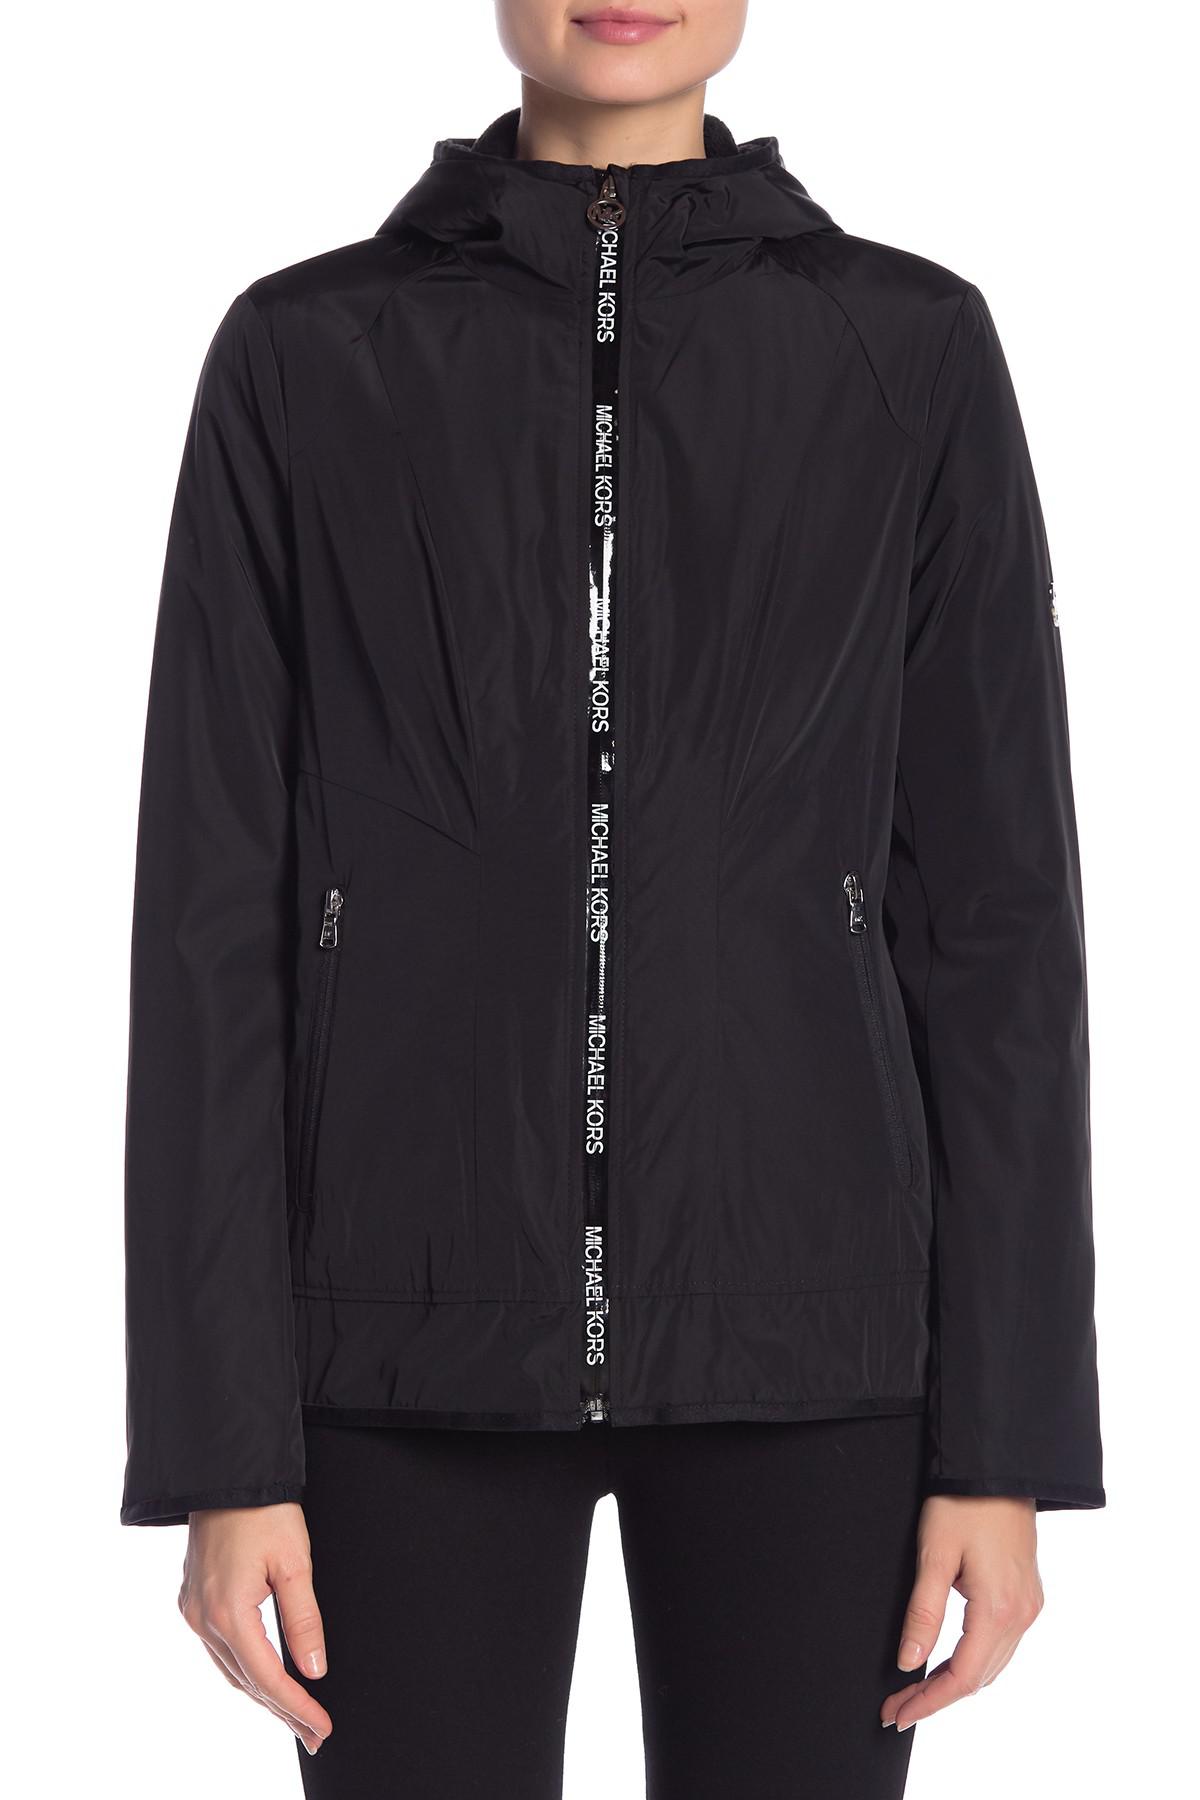 Michael Kors Synthetic Plush Lined Windbreaker Jacket in Black - Lyst